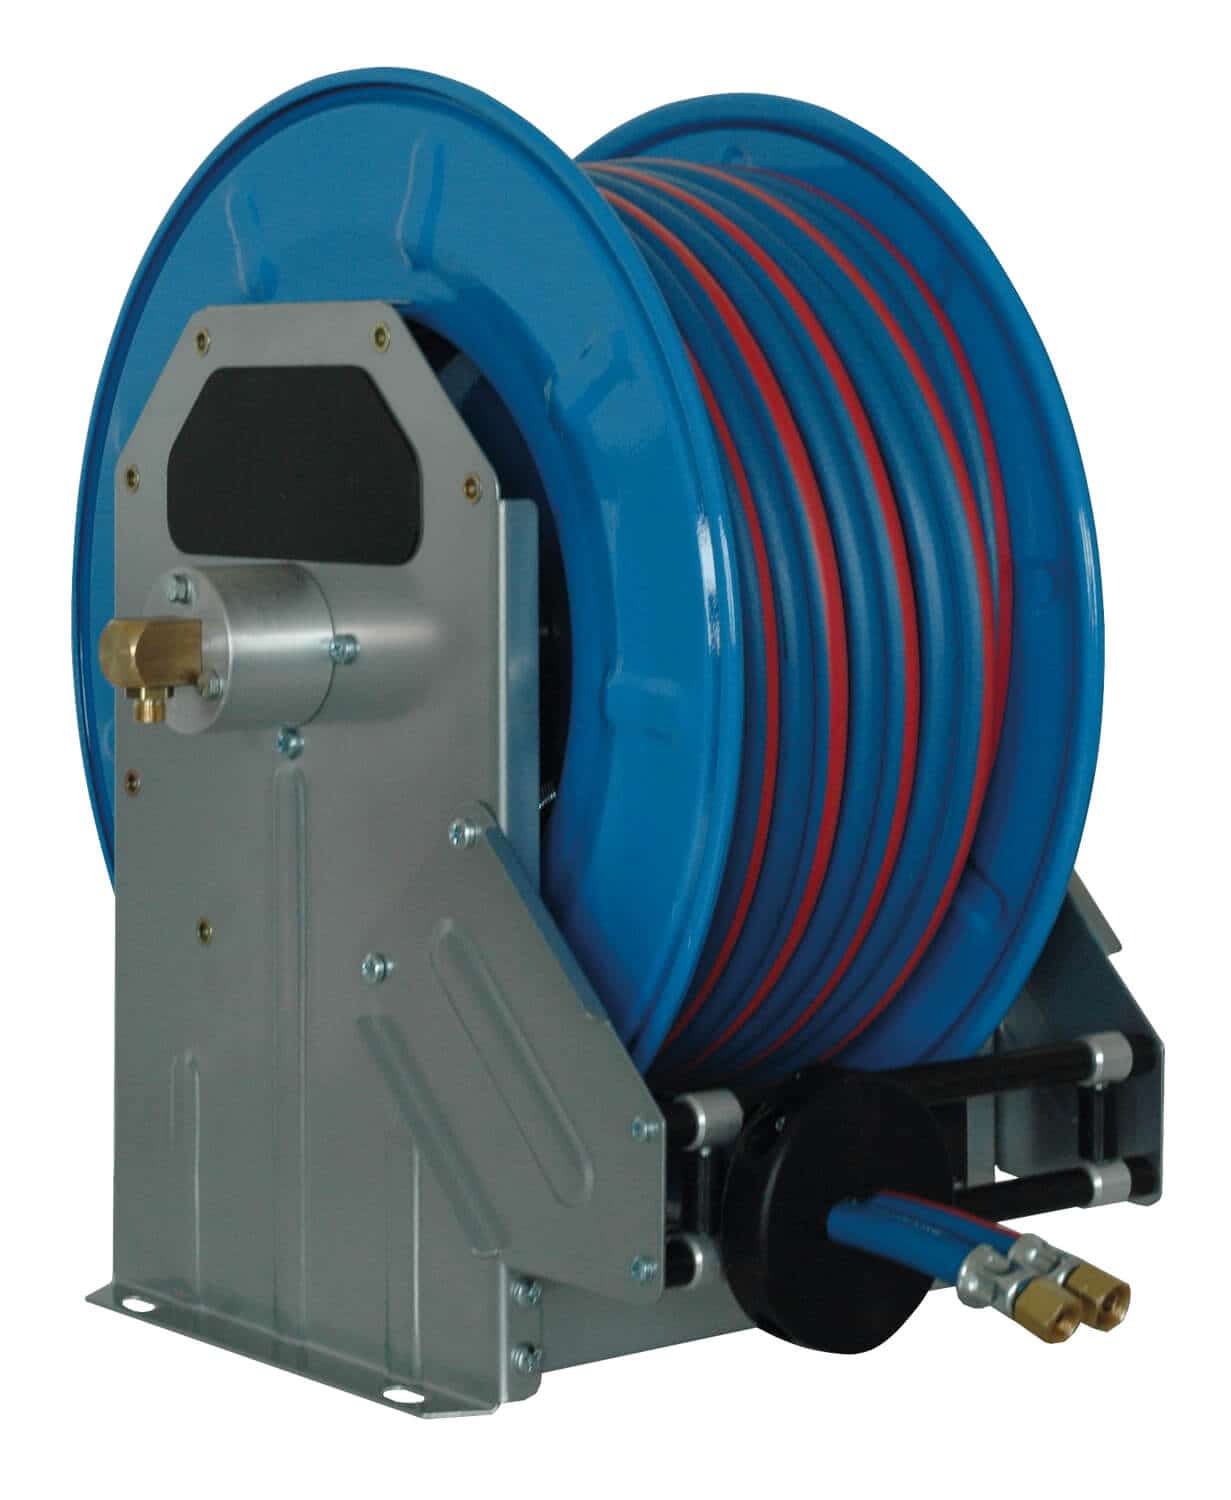 Automatischer Schlauchaufroller für technische Gase mit 15 m Spezial-Doppelschlauch DN 06/09, zur Wand-, Boden- oder Deckenmontage.